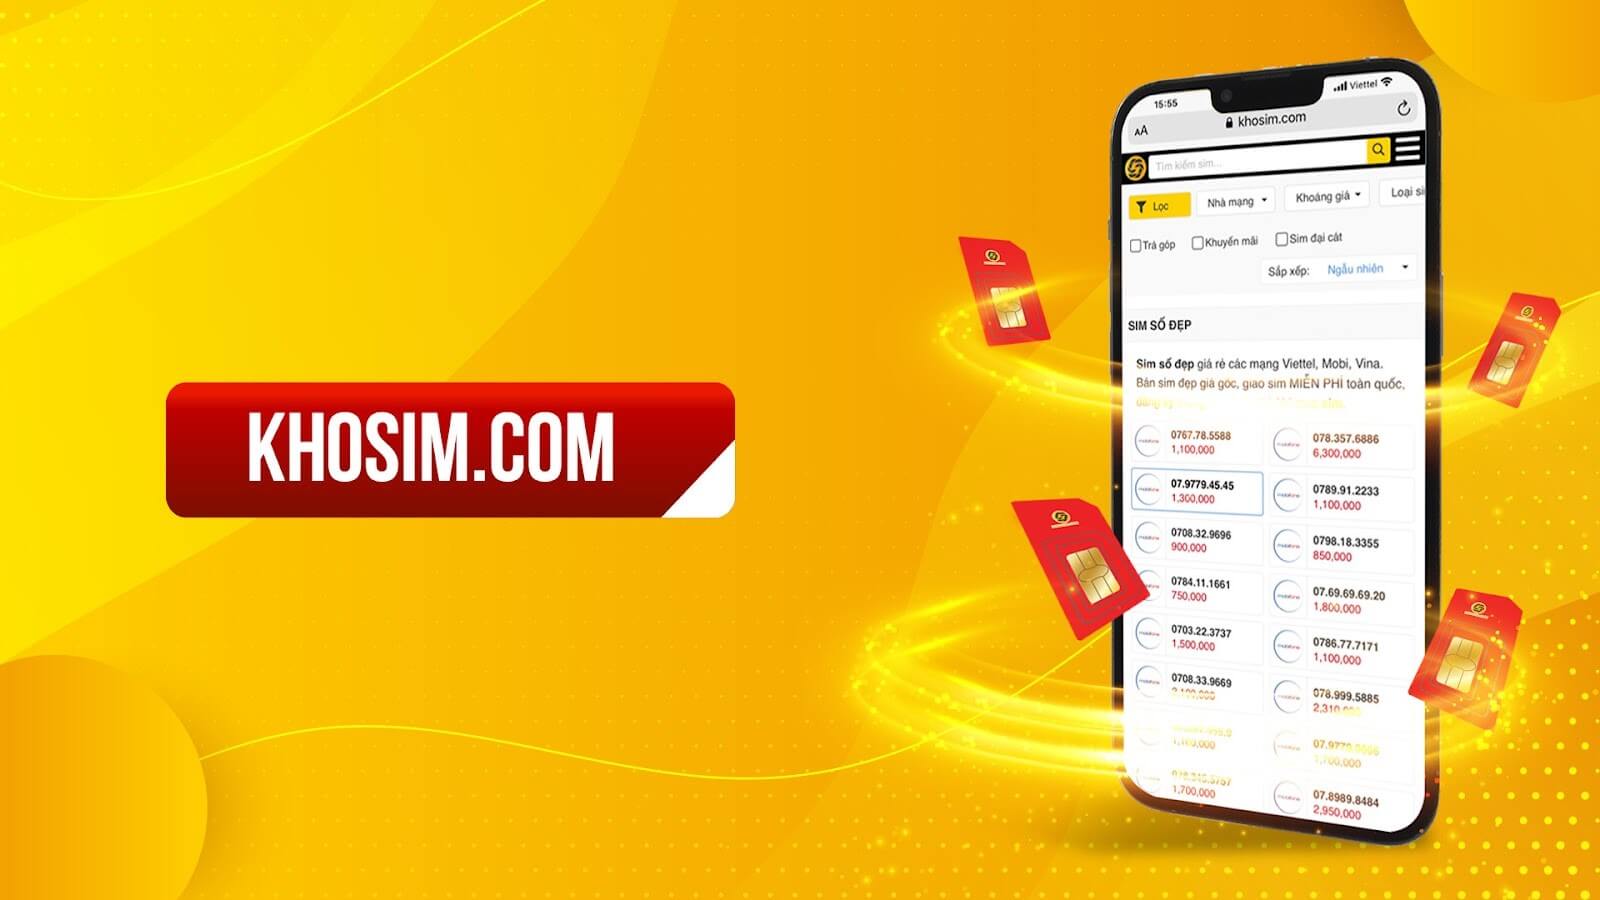 Sim Taxi tại Khosim.com luôn được bán với mức giá tốt nhất thị trường